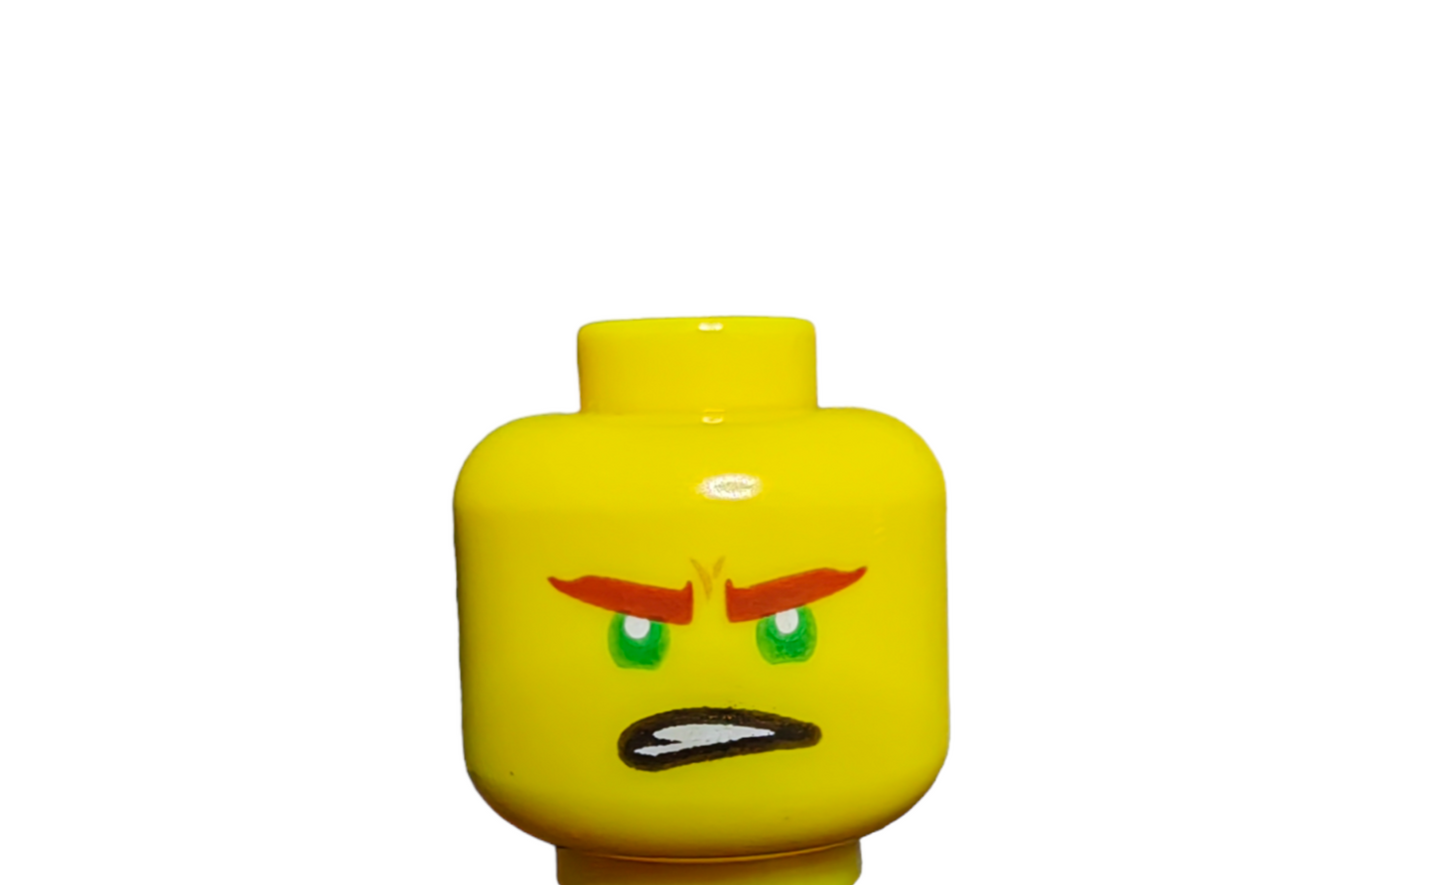 LEGO Head, Dual faced, Green eyes with reddish eye brows. - UB1521